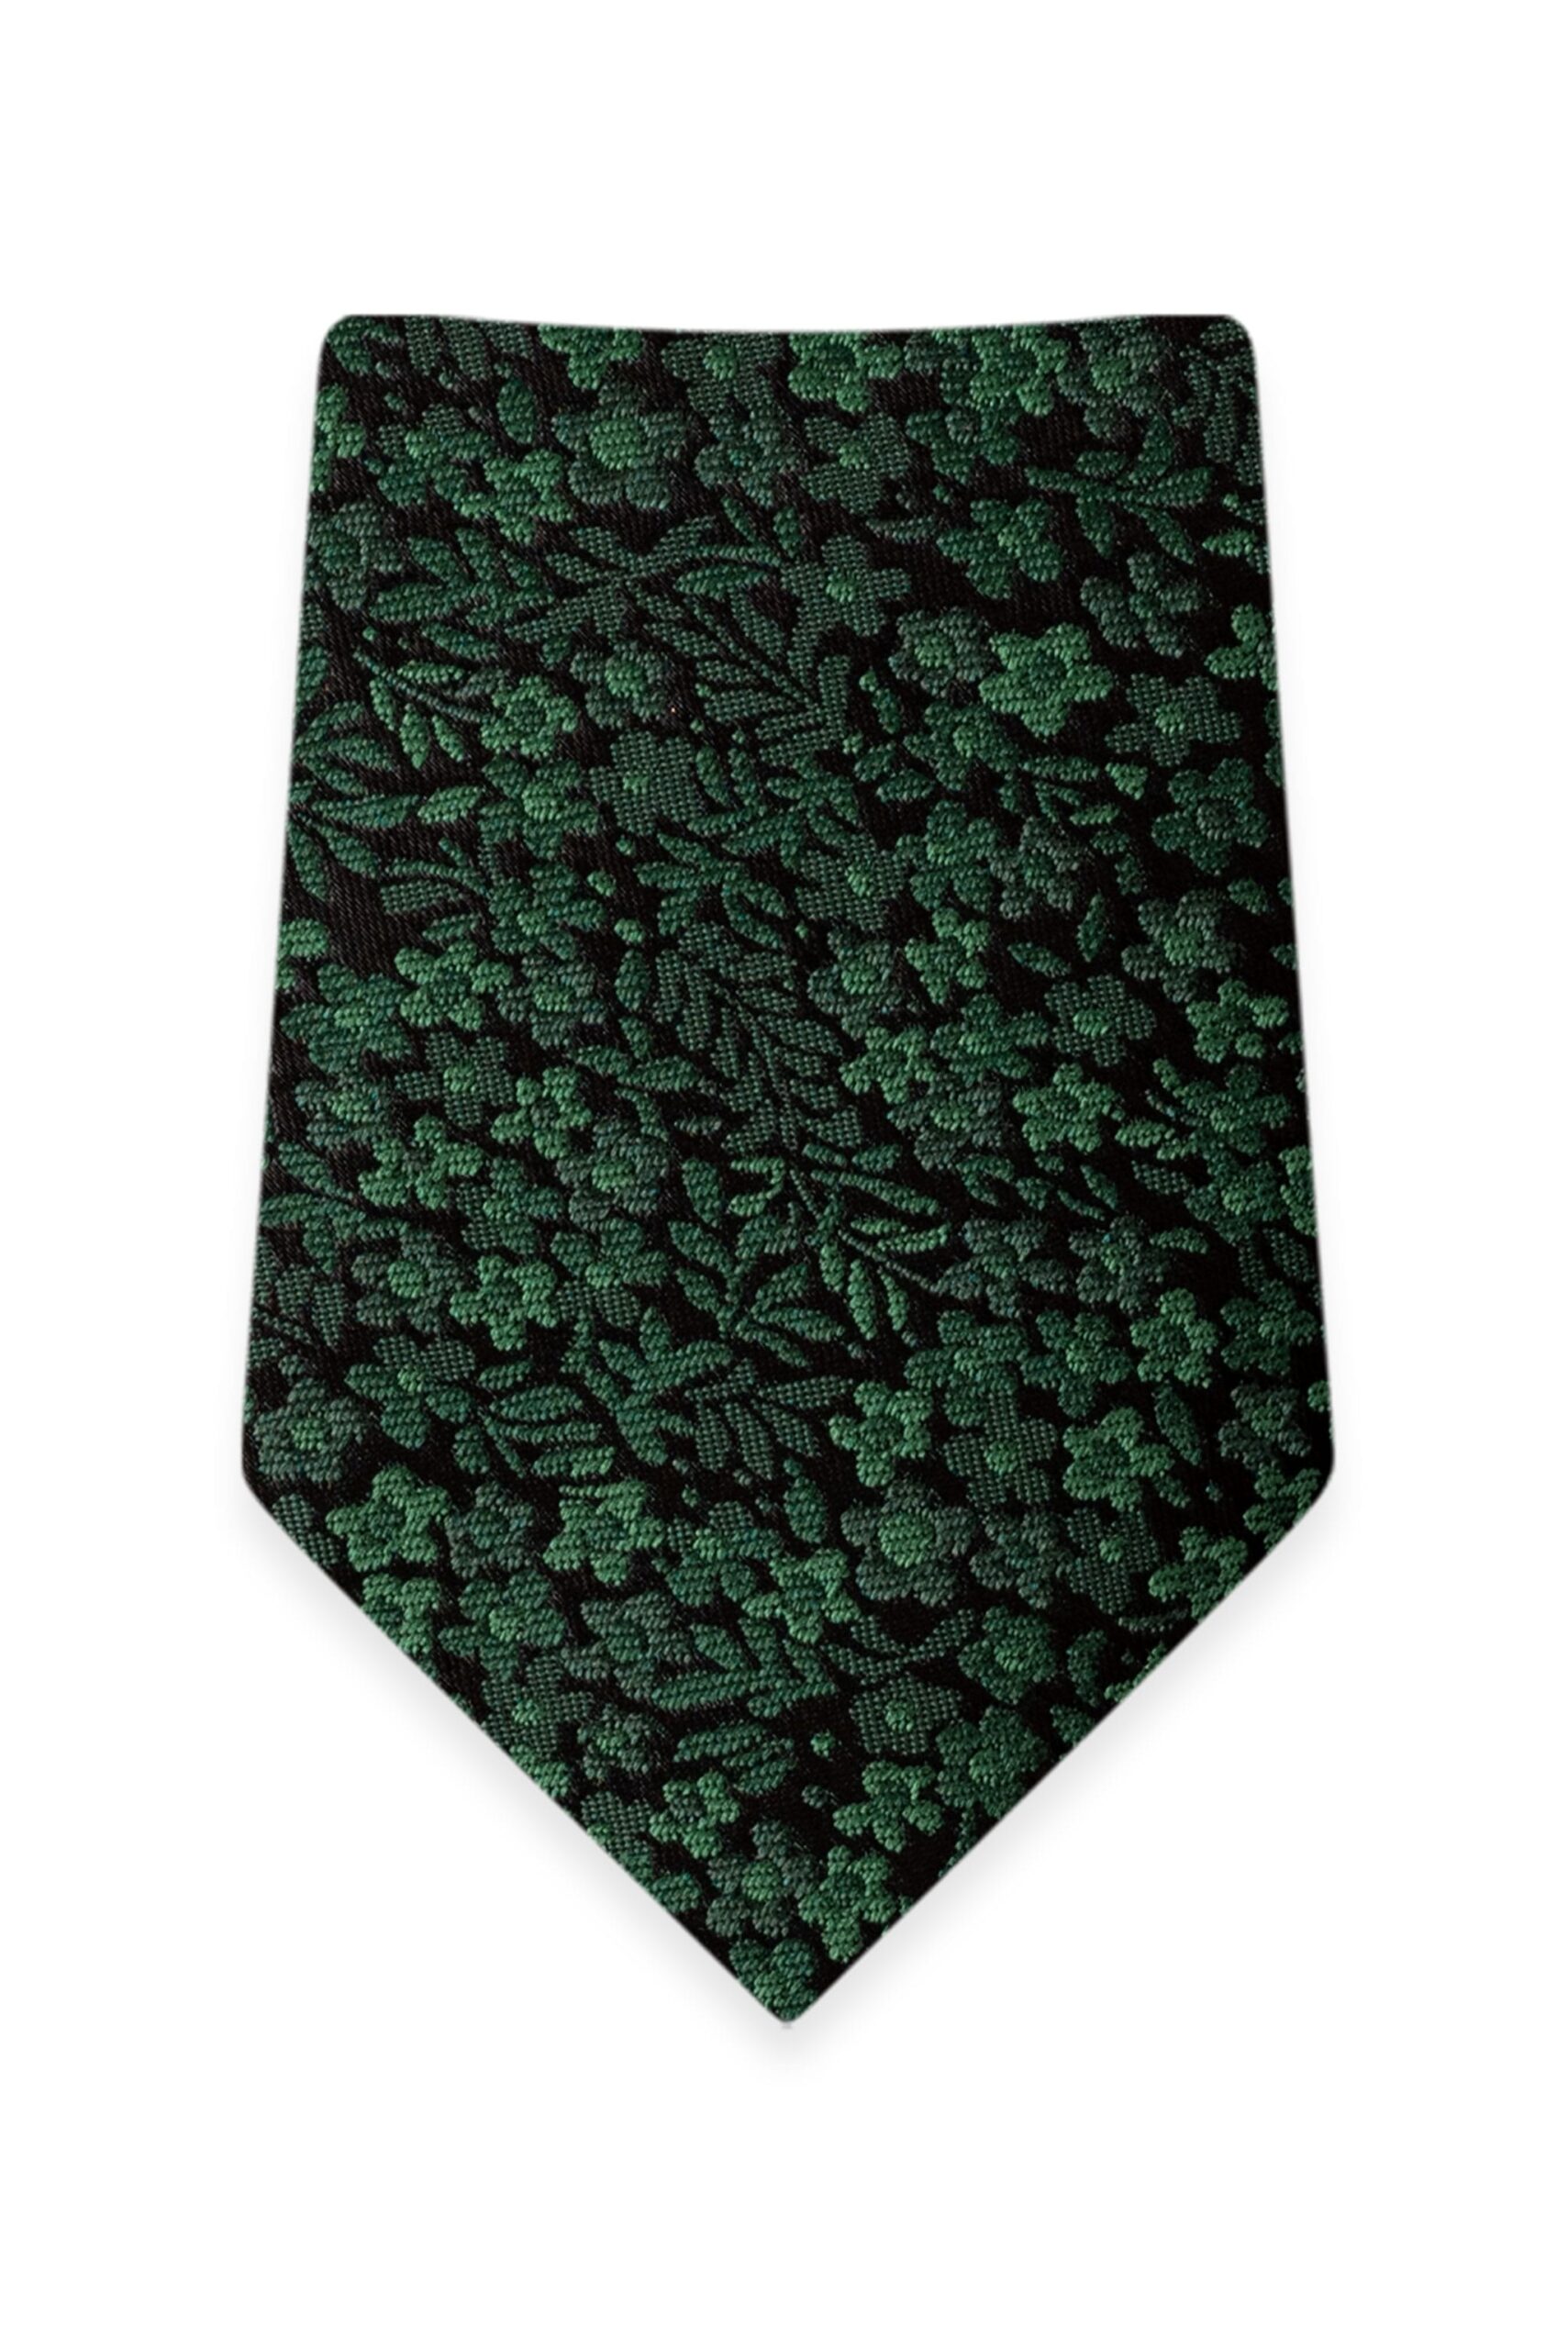 Floral Dark Green Self-Tie Windsor Tie